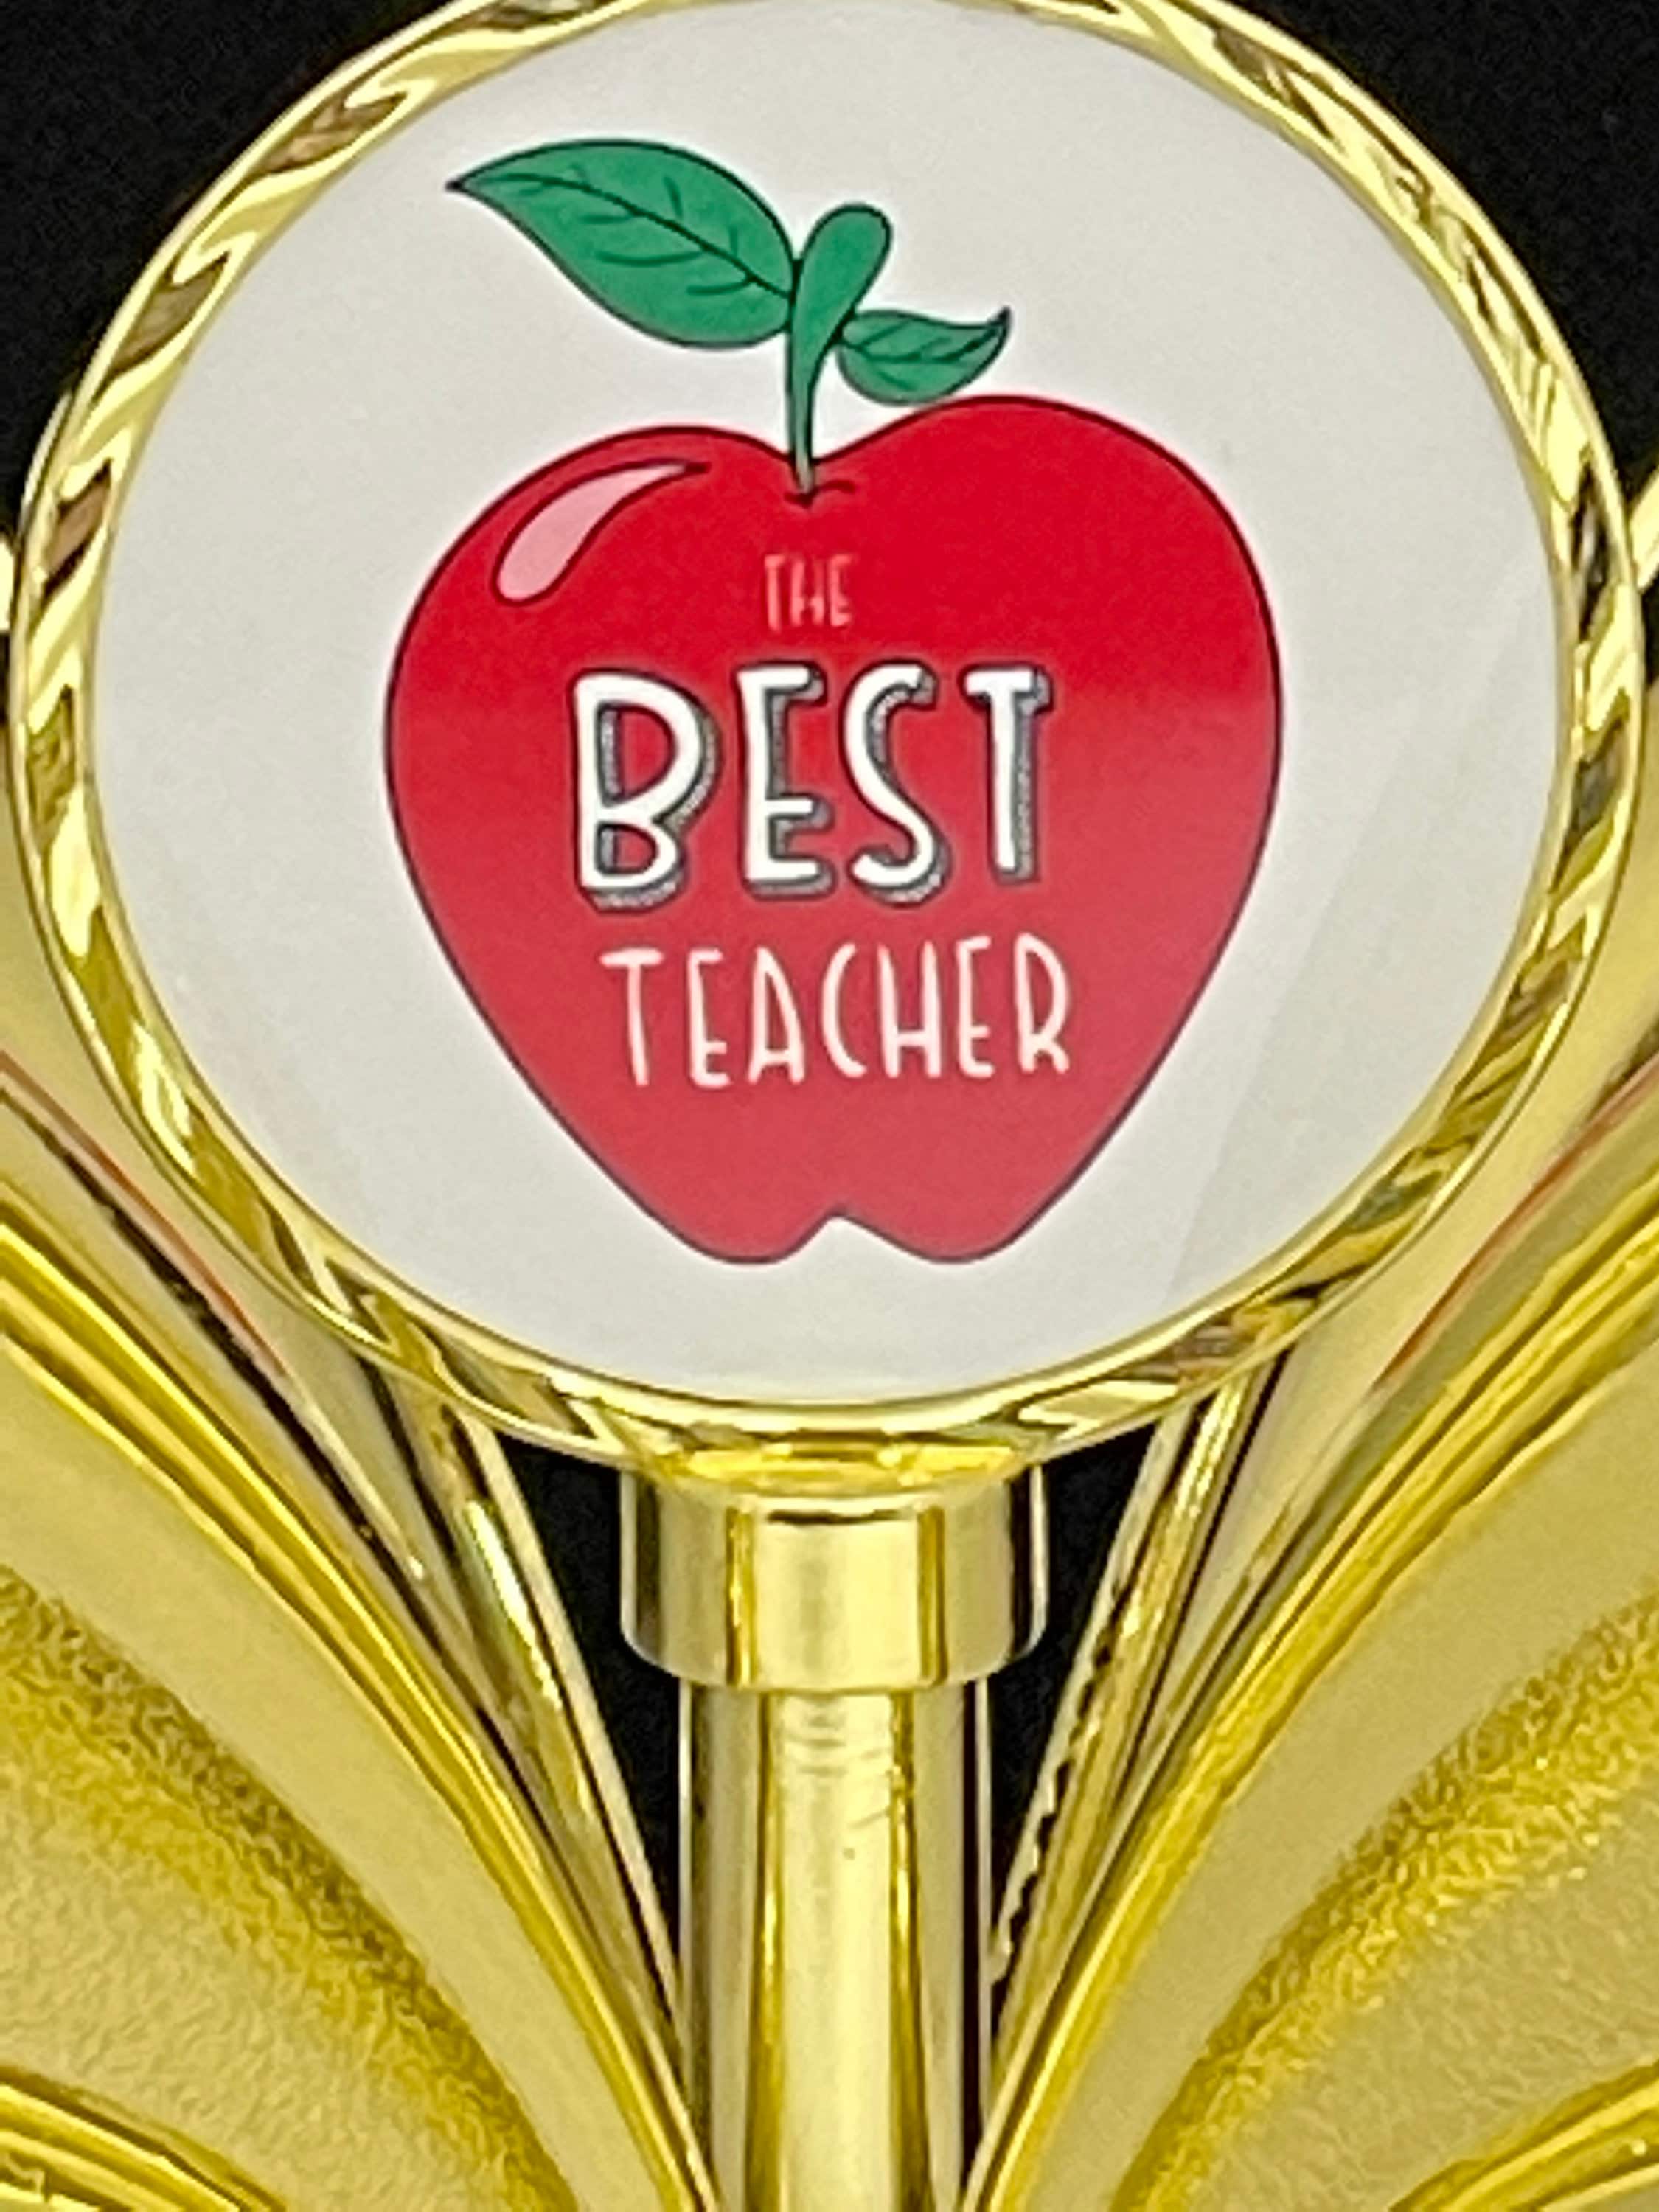 Best teacher award / Best teacher trophy / teacher trophy / Etsy